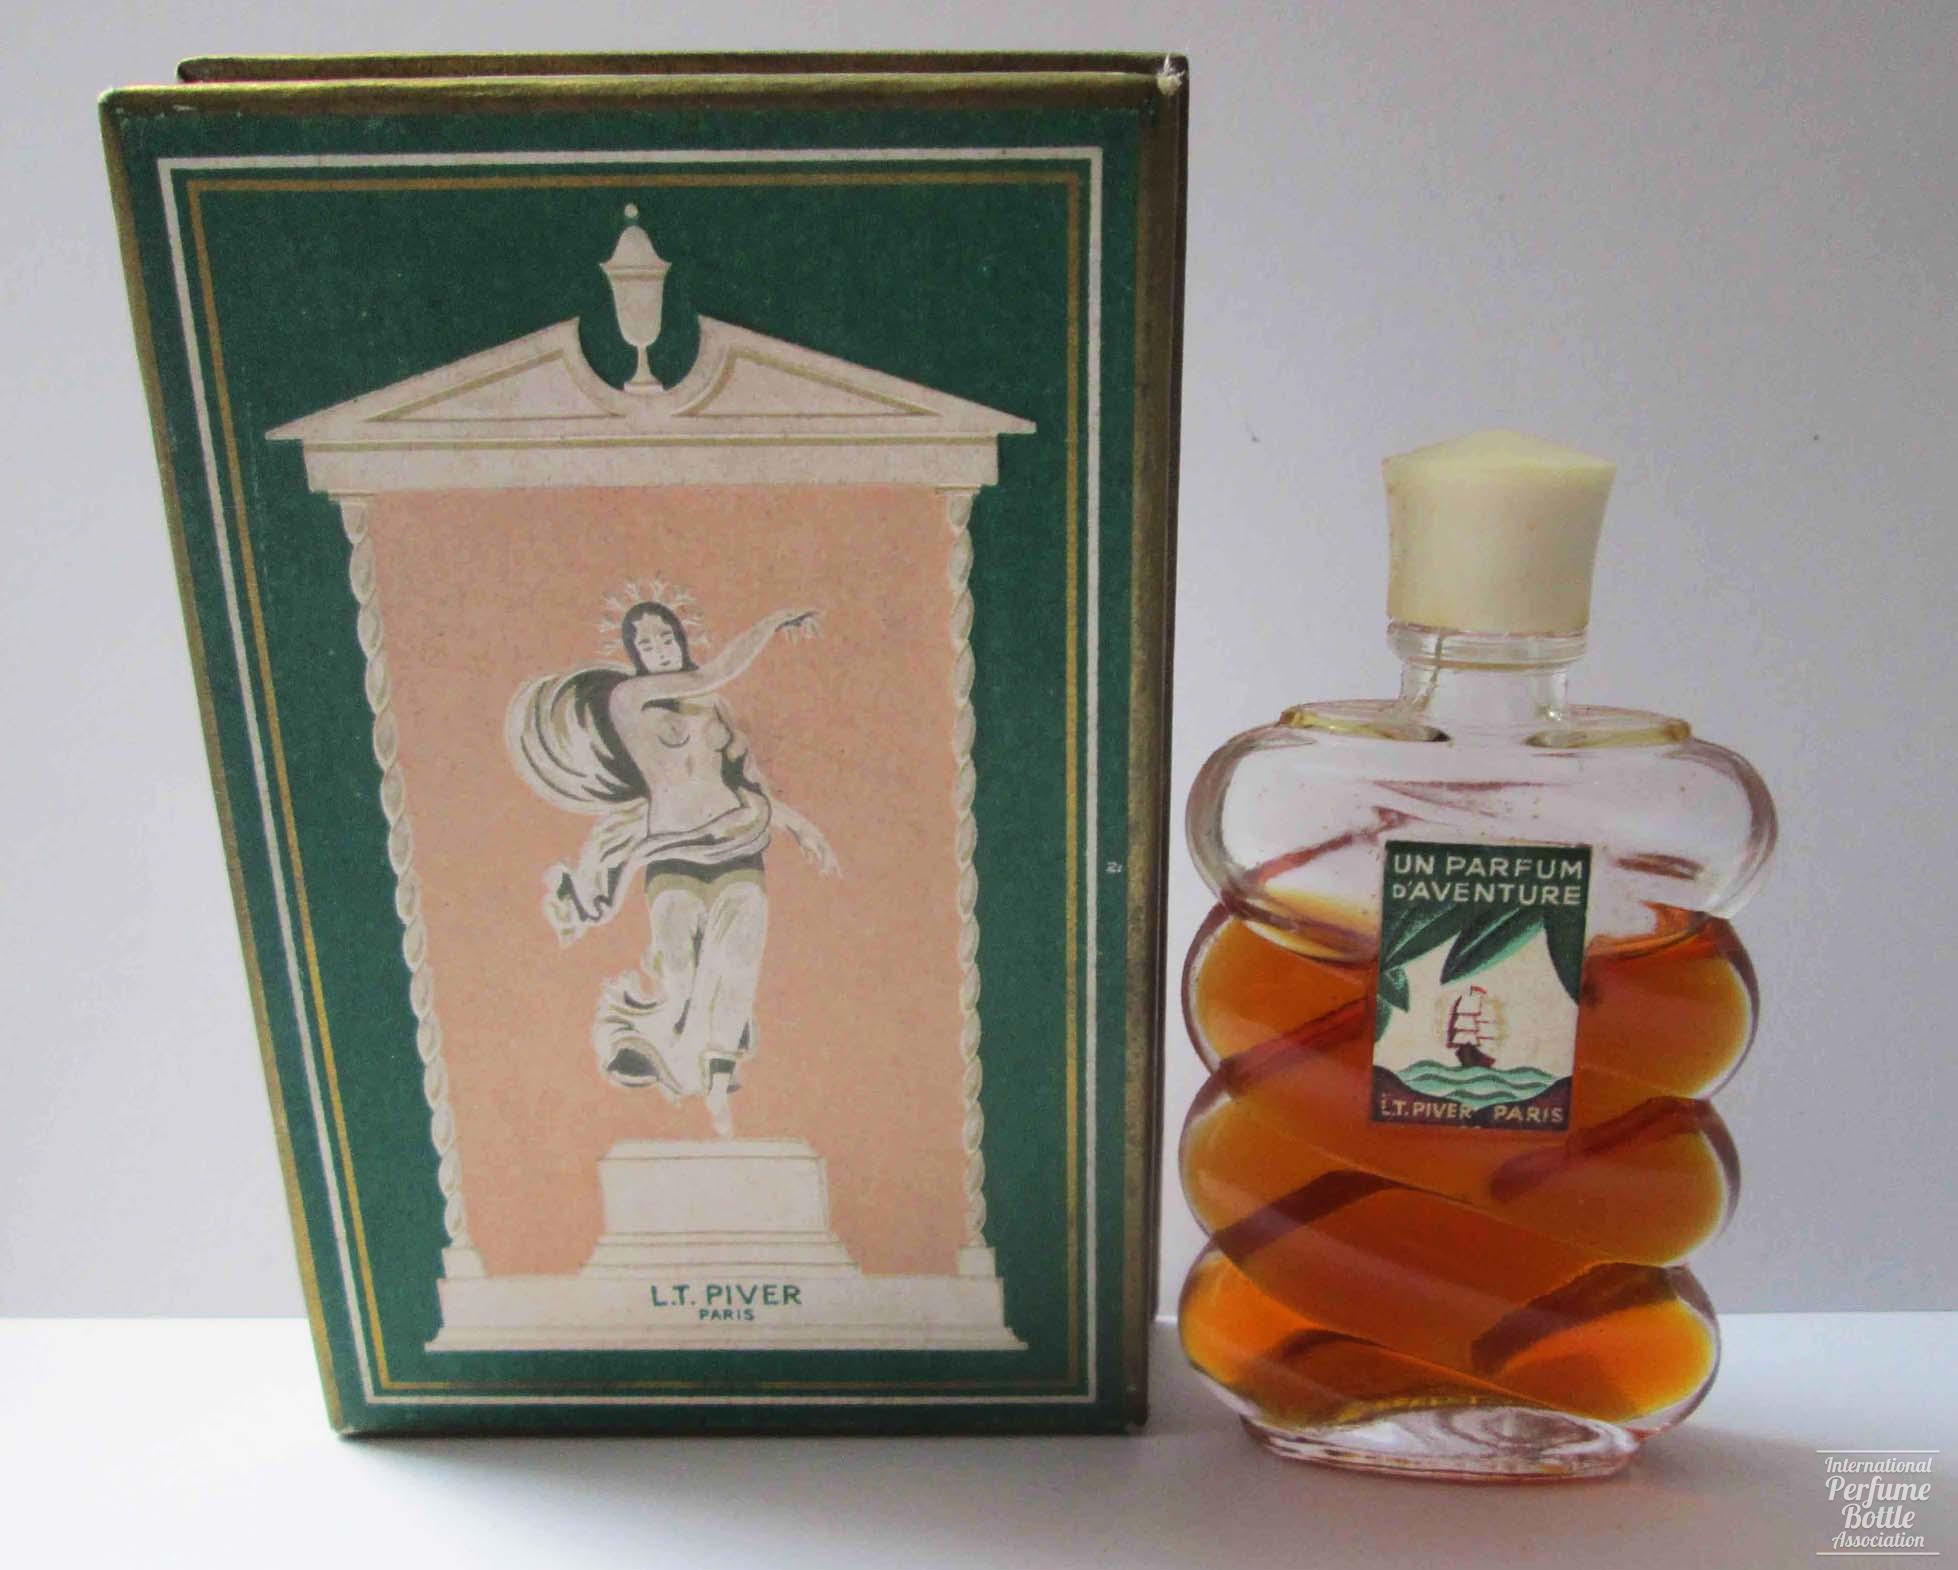 "Un Parfum d'Aventure" by L. T. Piver